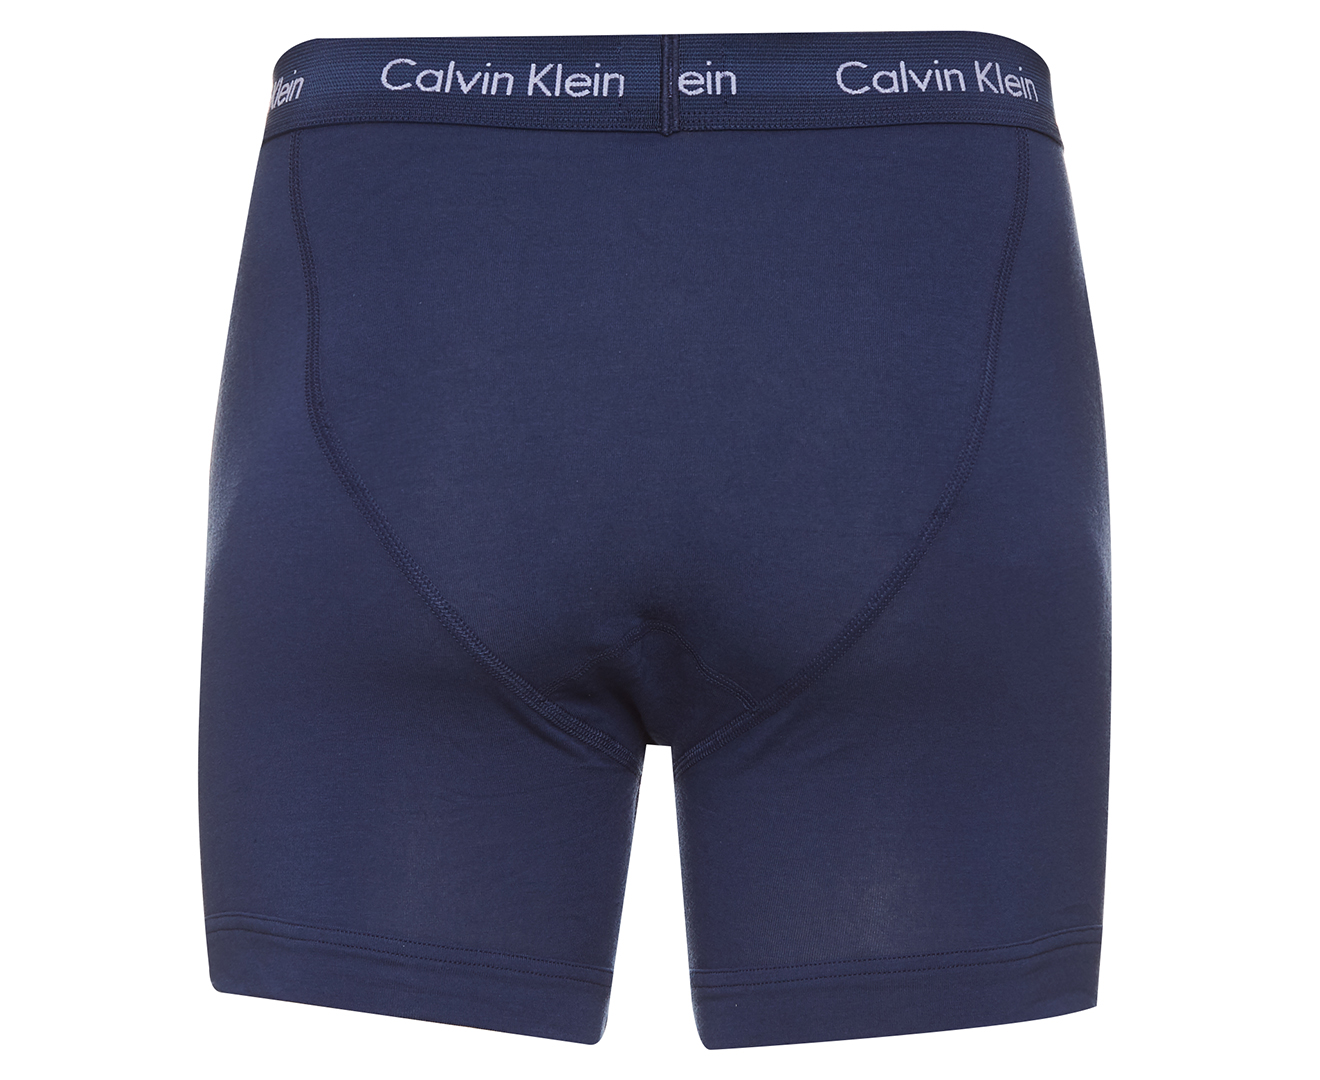 Calvin Klein Underwear Cotton Stretch Boxer Brief 3-Pack NU2666 Reviews